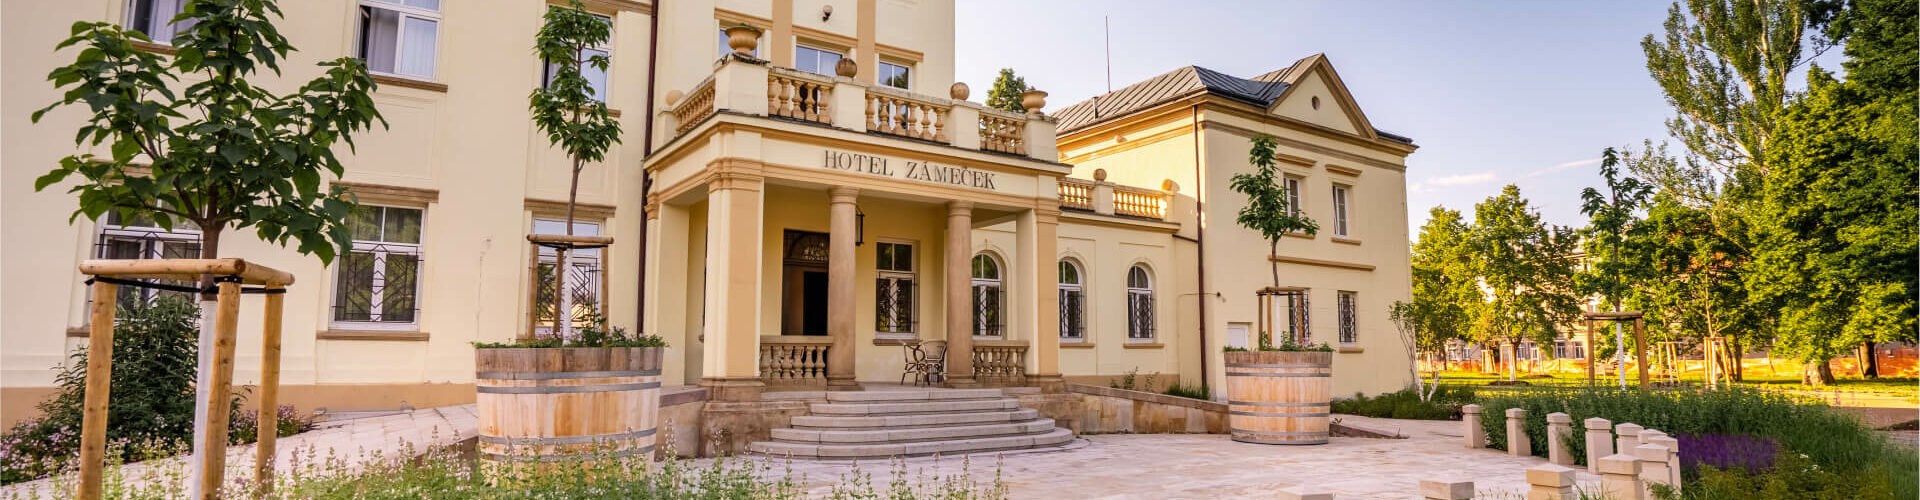 Hotel Poděbrady